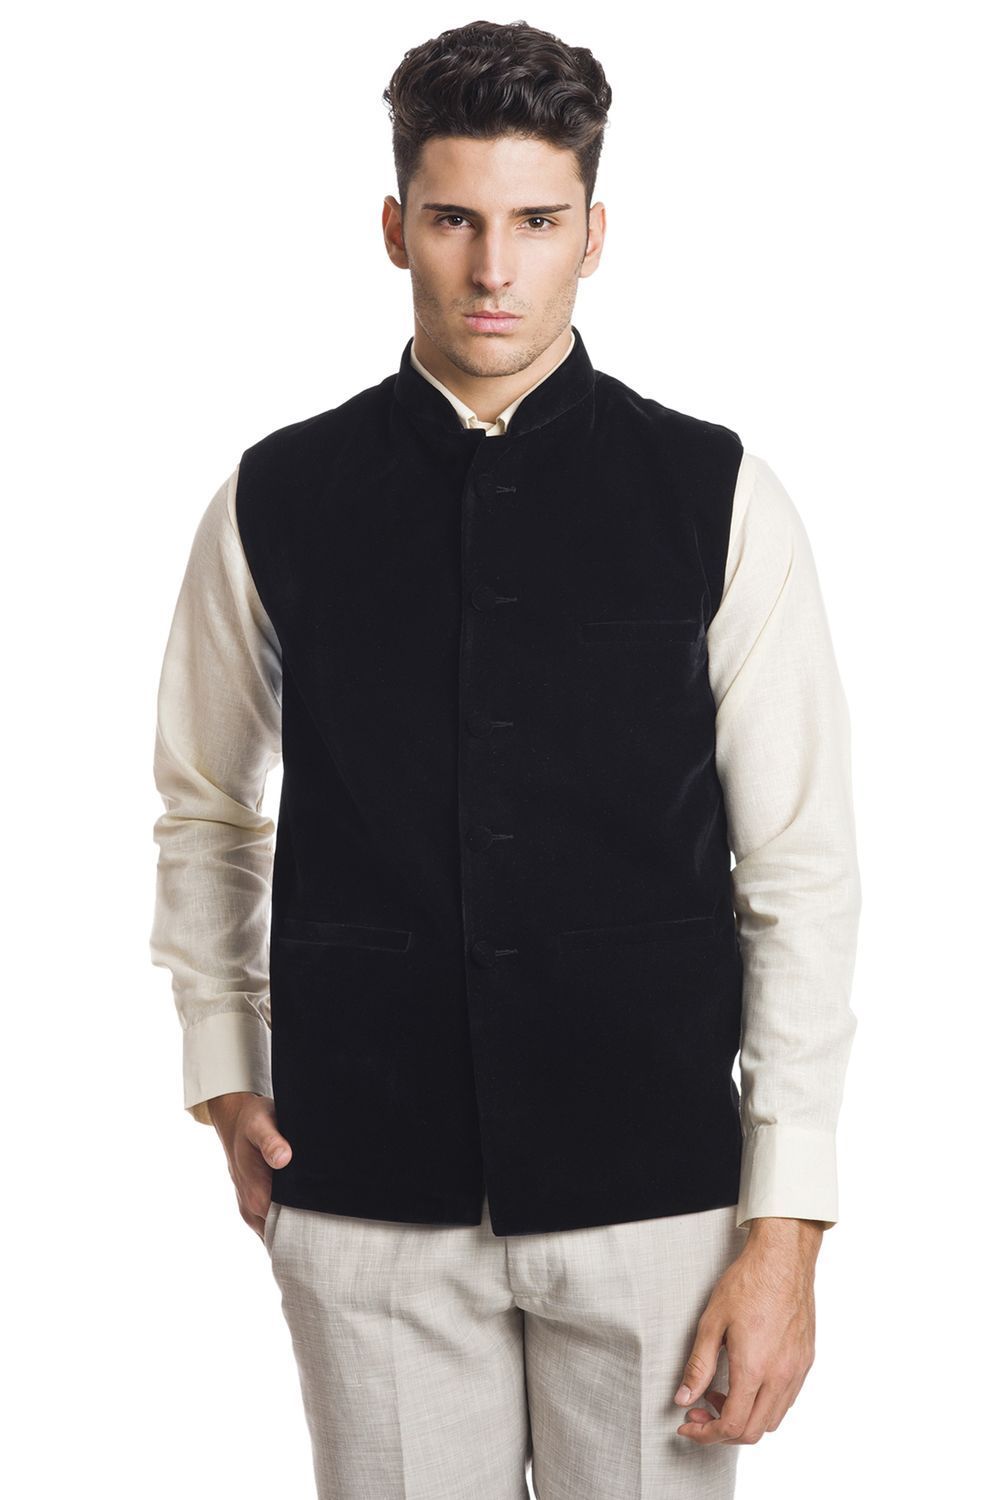 Velvet Black Nehru Jacket